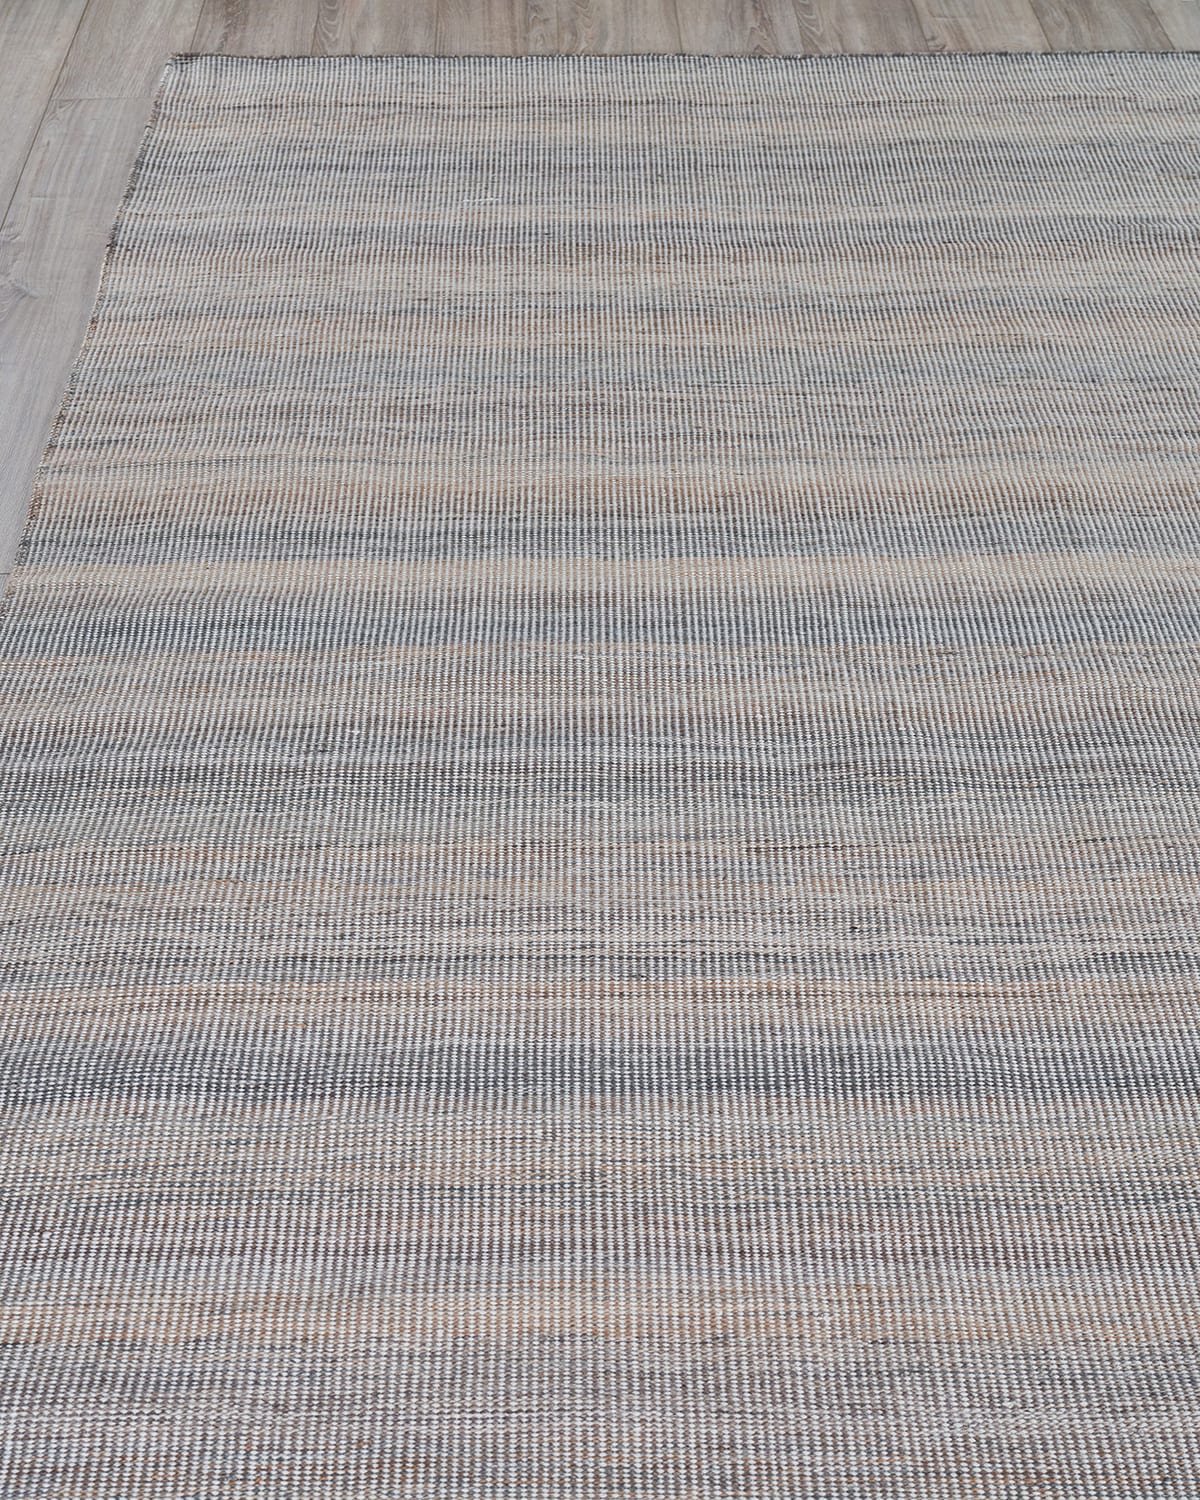 Exquisite Rugs Loren Indoor/outdoor Flat-weave Rug, 10' X 14'